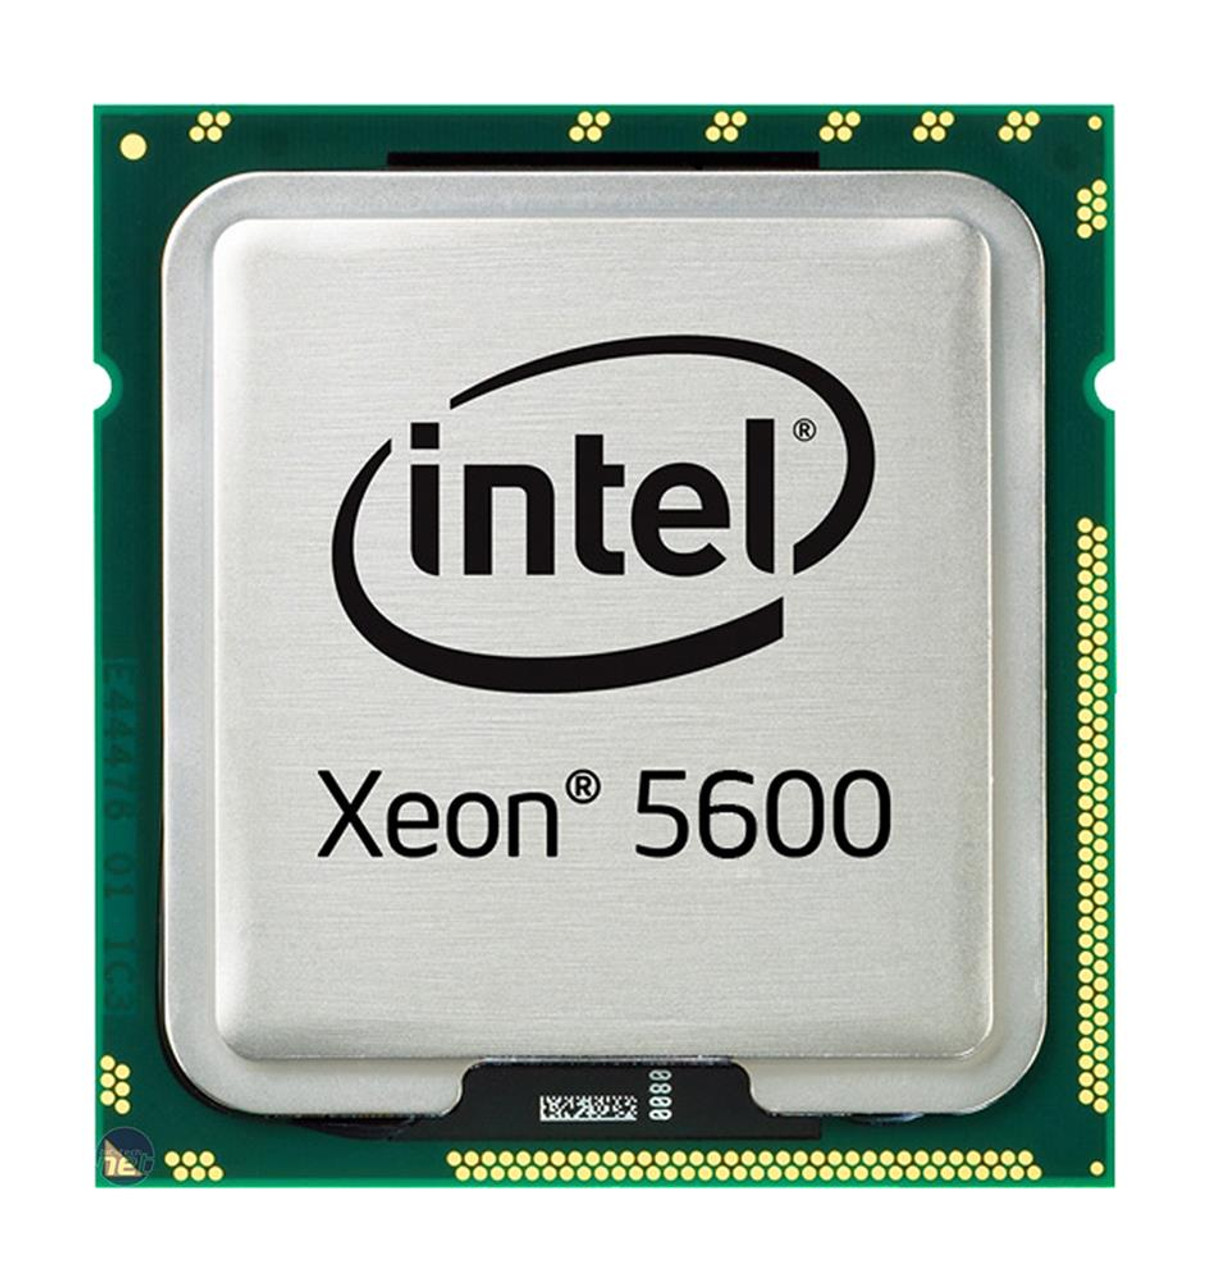 AT80614005124AA Intel Xeon X5680 6 Core 3.33GHz 6.40GT/s QPI 12MB L3 Cache Socket LGA1366 Processor